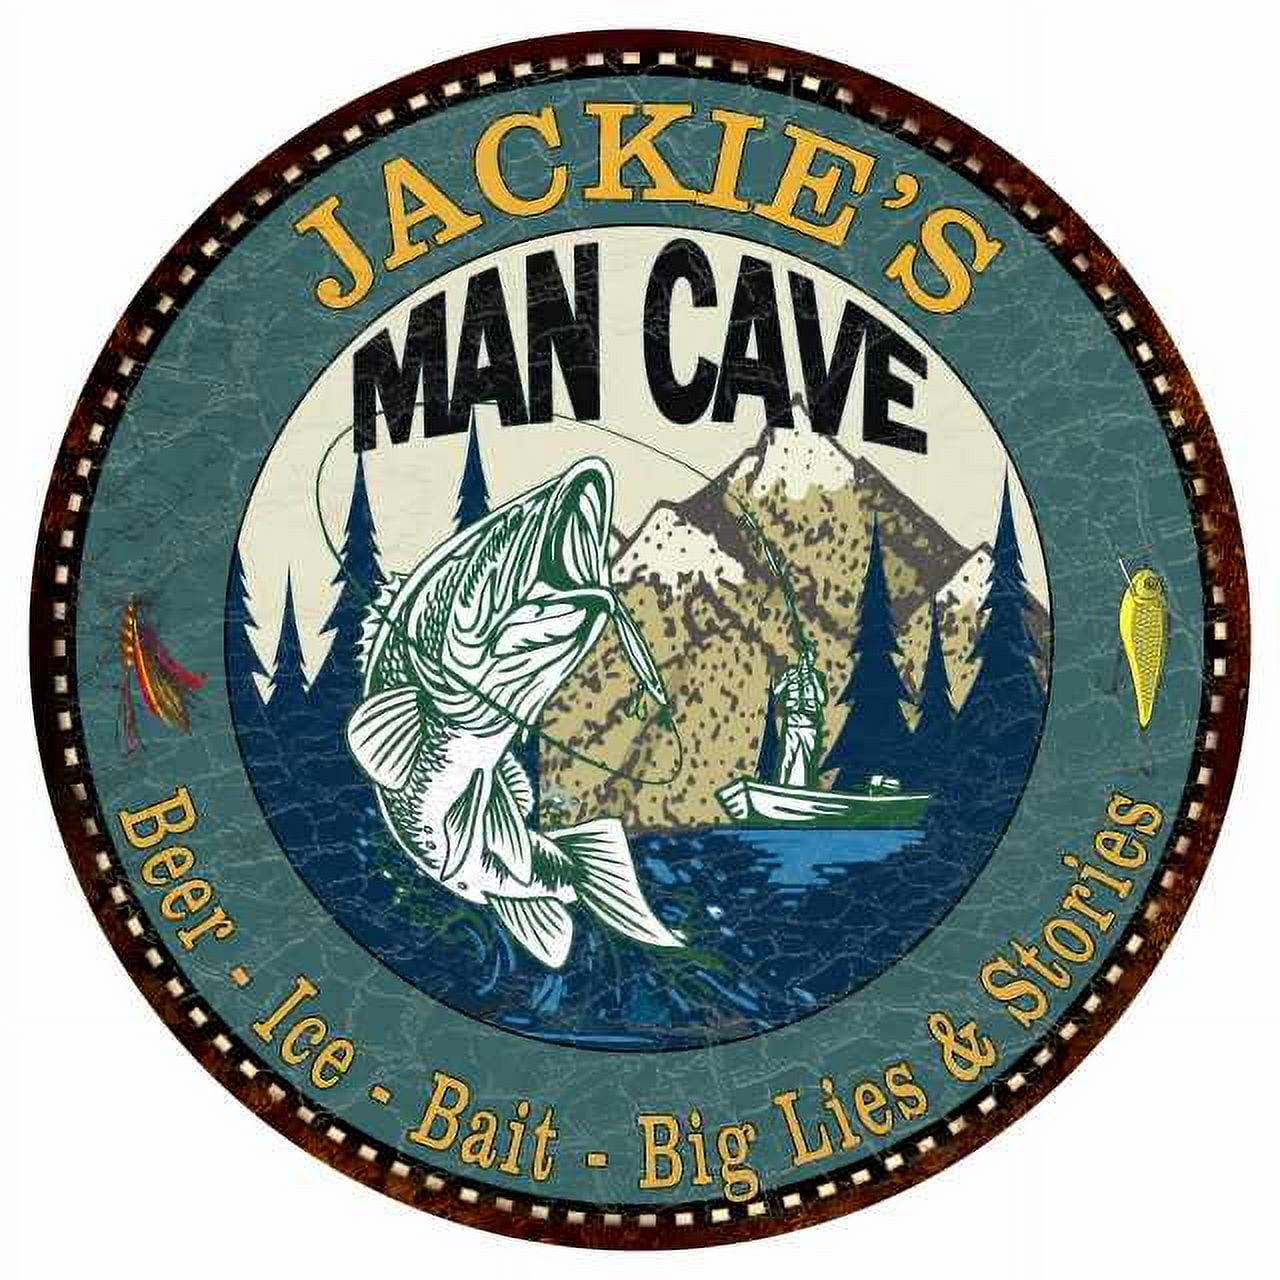 JACKIE'S Man Cave Fishing 14 Round Metal Sign Garage Bar Decor